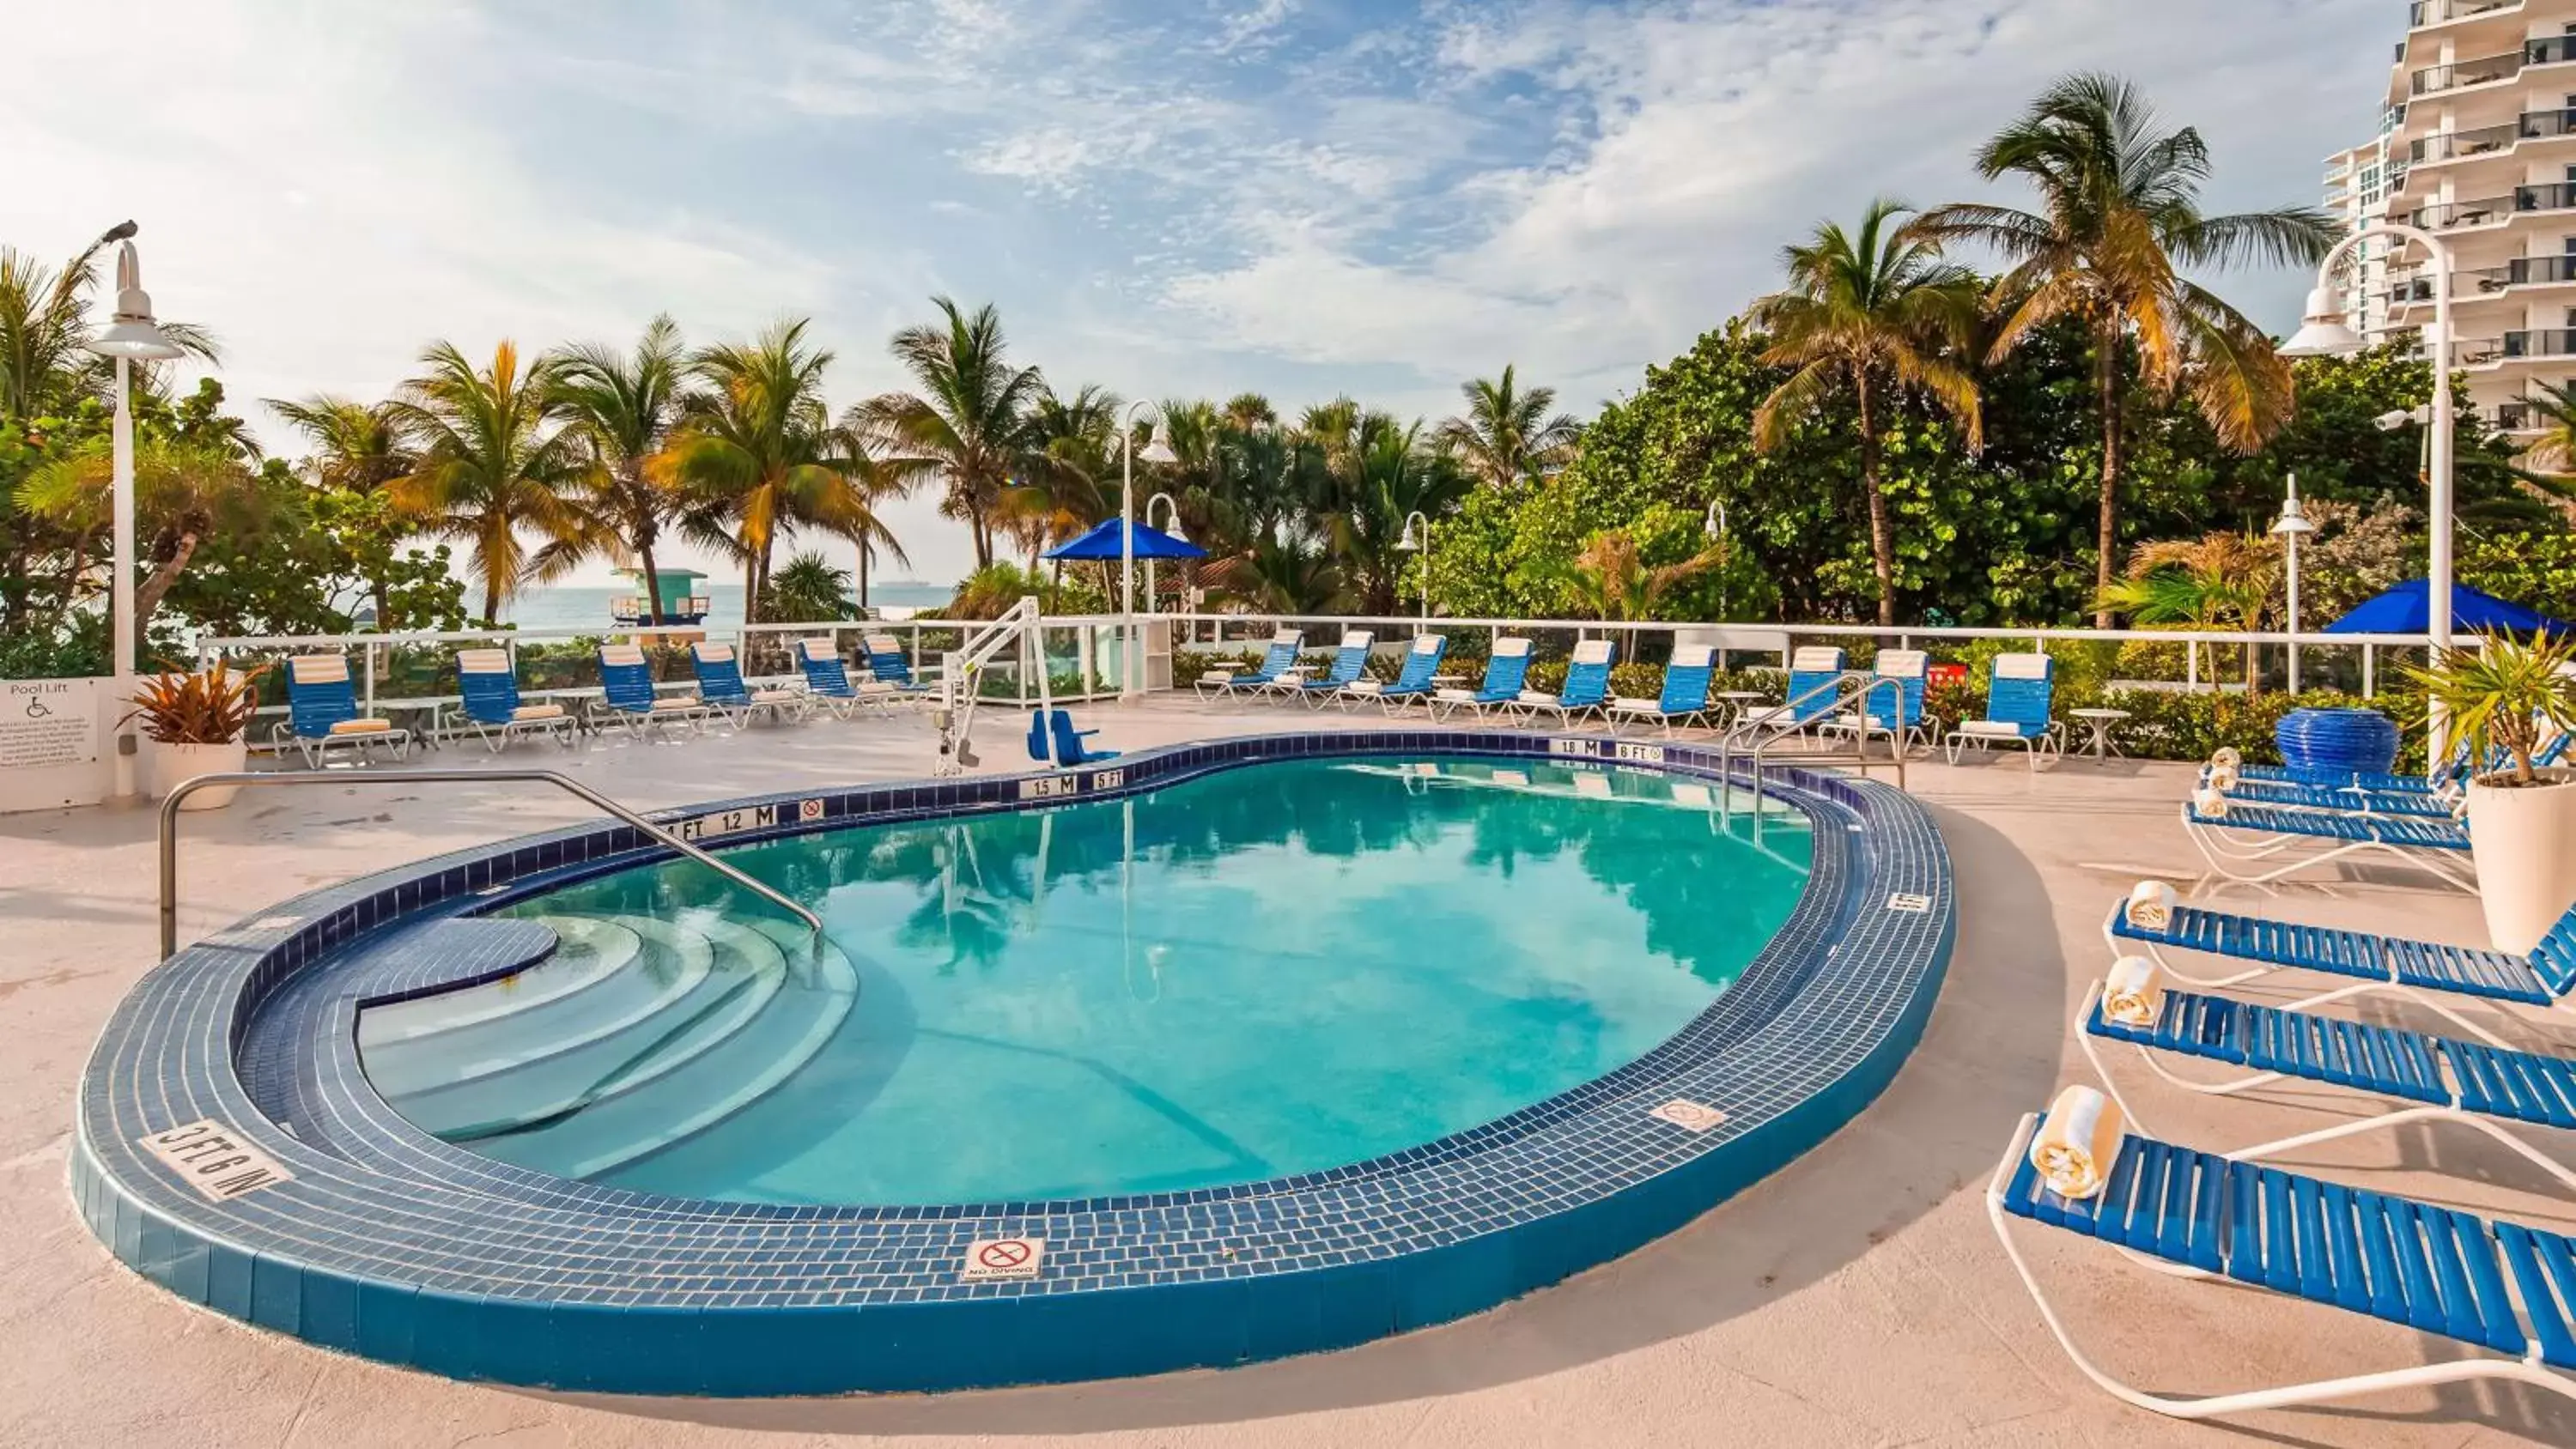 On site, Swimming Pool in Best Western Plus Atlantic Beach Resort